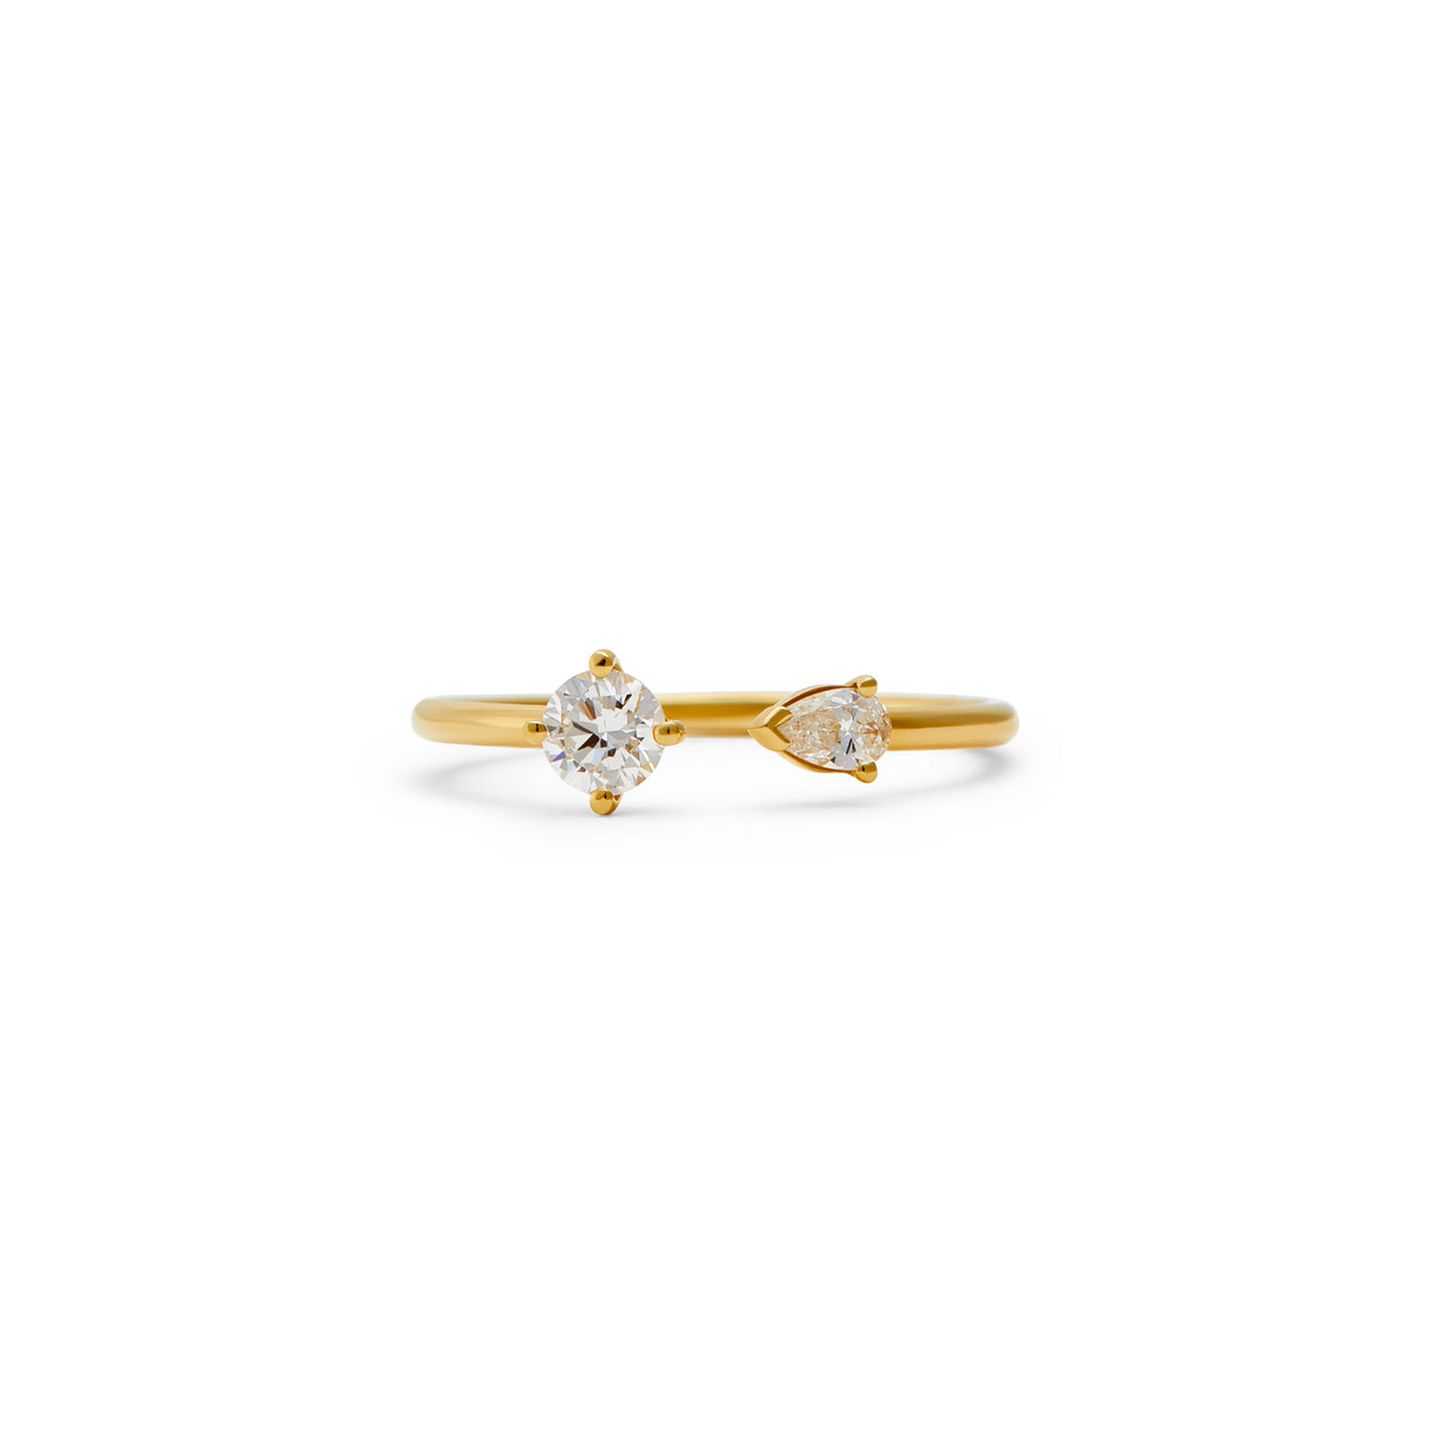 Schmuck geht immer. Deswegen landet auch dieser zauberhafte Ring Chiara von Zany&Shy auf unserem Wunschzettel. Zart, elegant und mit der richtigen Portion Extravaganz das perfekte Schmuckstück. Was uns besonders gefällt: Der Ring besteht aus recyceltem 18-karätigem Gold. Ein perfektes Geschenk für uns!  Ring Chiara von Zany&Shy für 935 €